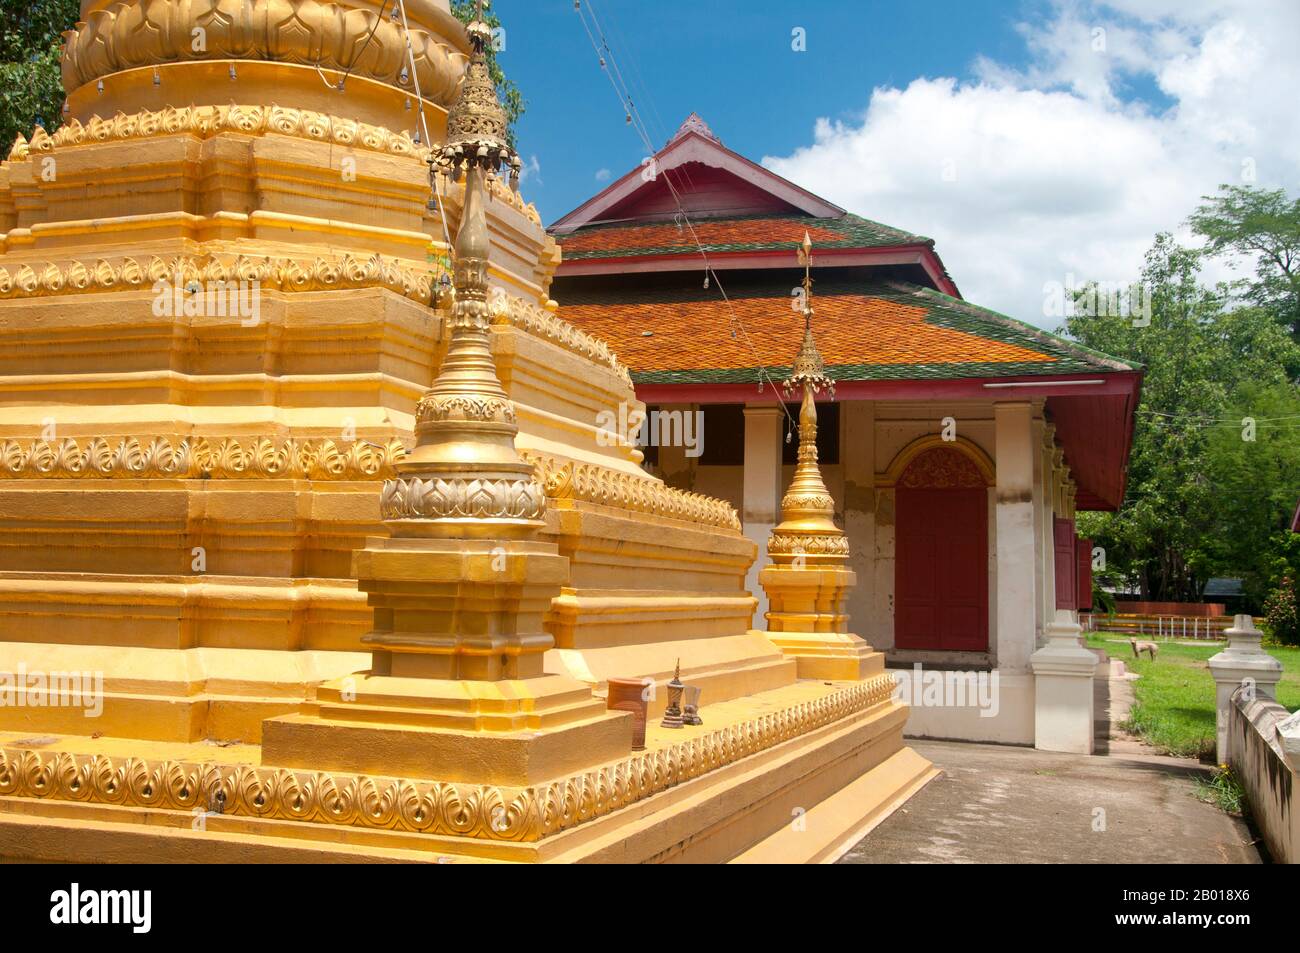 Thailand: Der birmanische Tempel des Wat Sai Mun Myanmar, Chiang Mai. In der südöstlichen Ecke der Altstadt von Chiang Mai steht Wat Myanmar, ein schönes Beispiel für einen birmanischen Tempel aus dem 19.. Jahrhundert, der in Mandalay nicht unrichtig aussehen würde. Dieser Tempel ist hauptsächlich mit der Burman-Tradition im Flachland in der Stadt verbunden, und Bilder der Shwedagon-Pagode und der Sule-Pagode in Yangon (Rangun) schmücken die Wände. Stockfoto